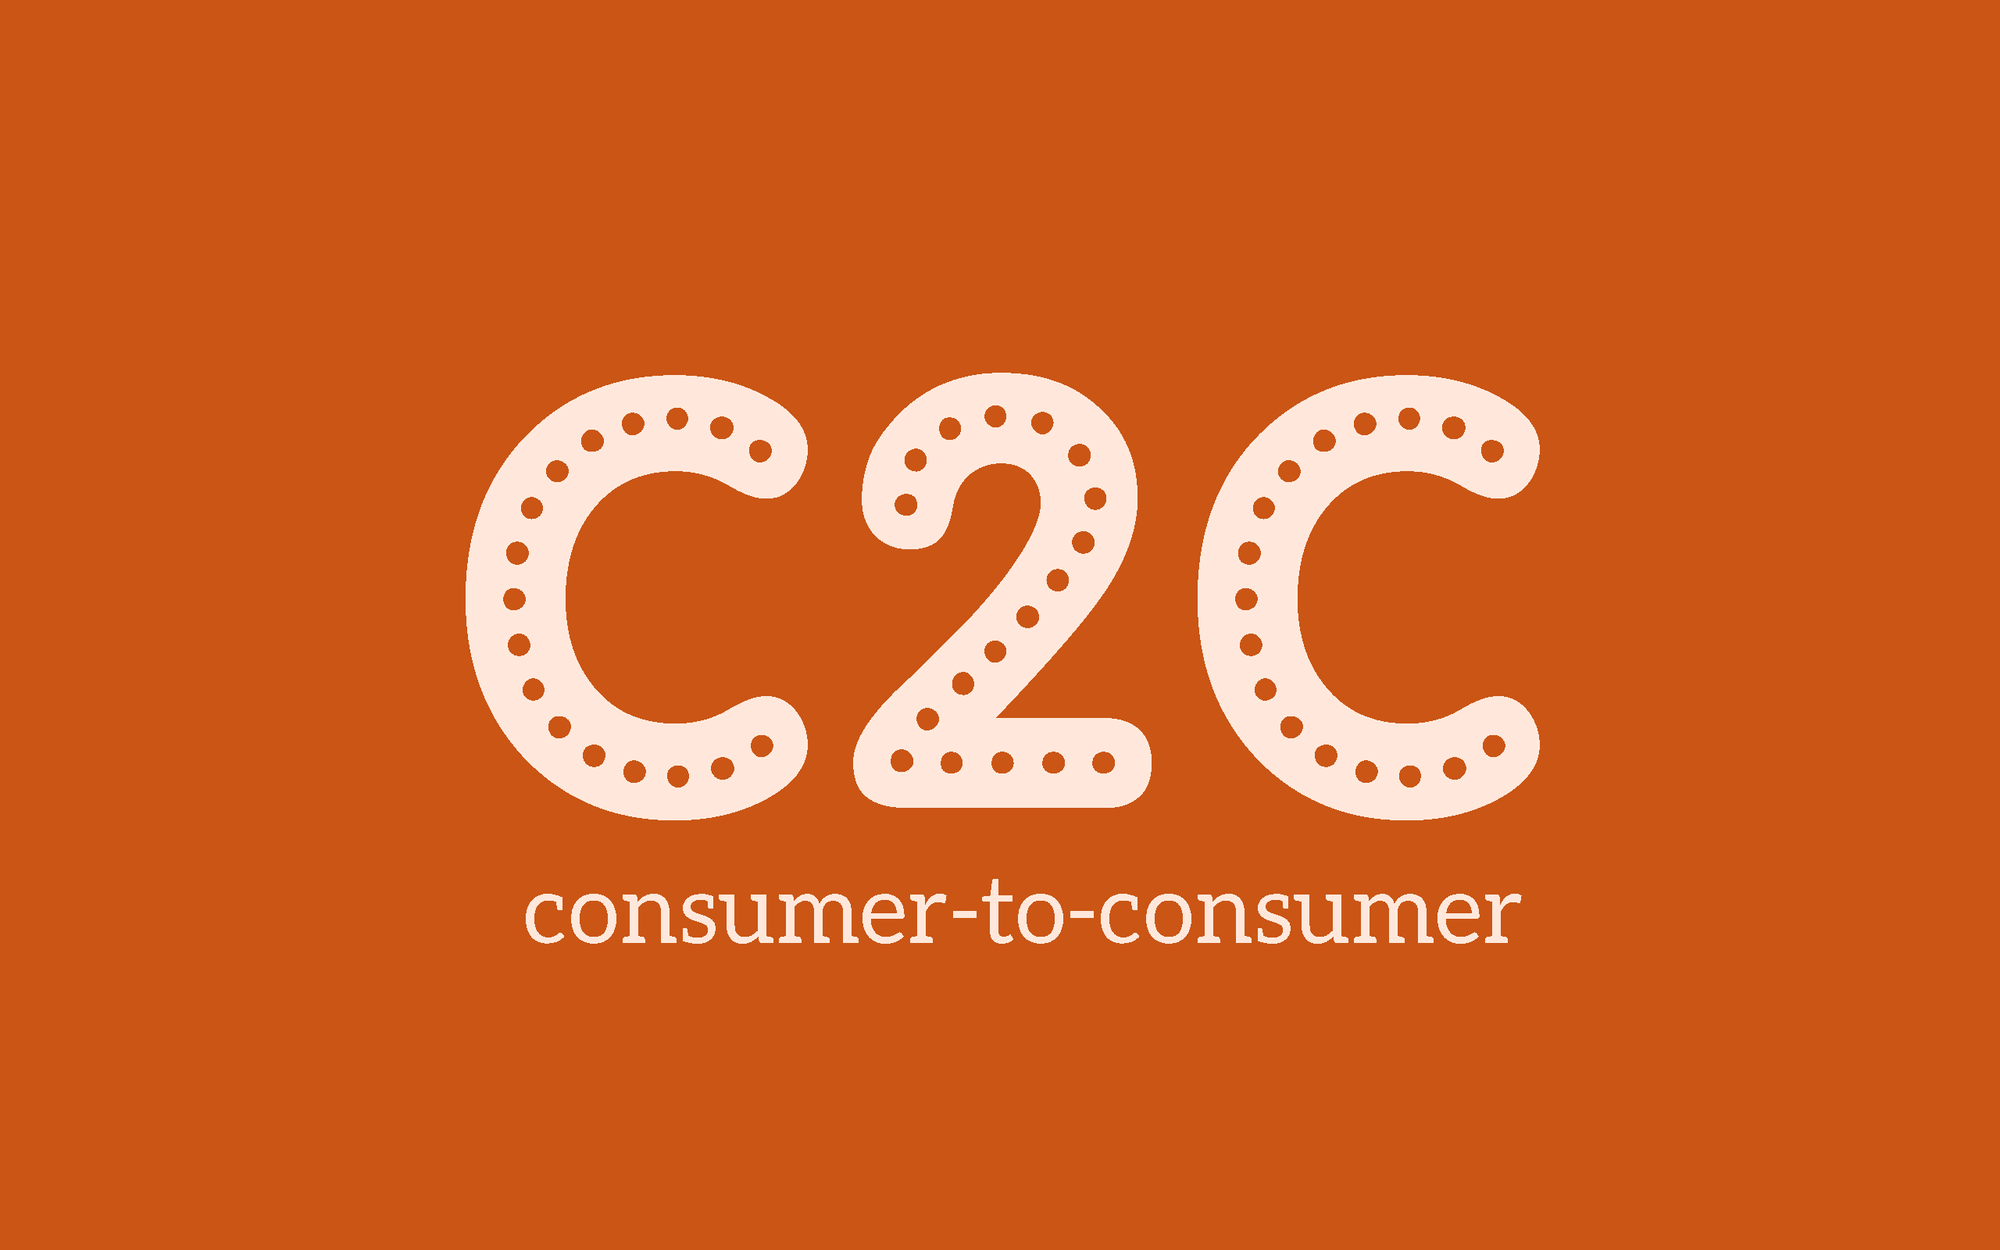 Khái niệm C2C là gì